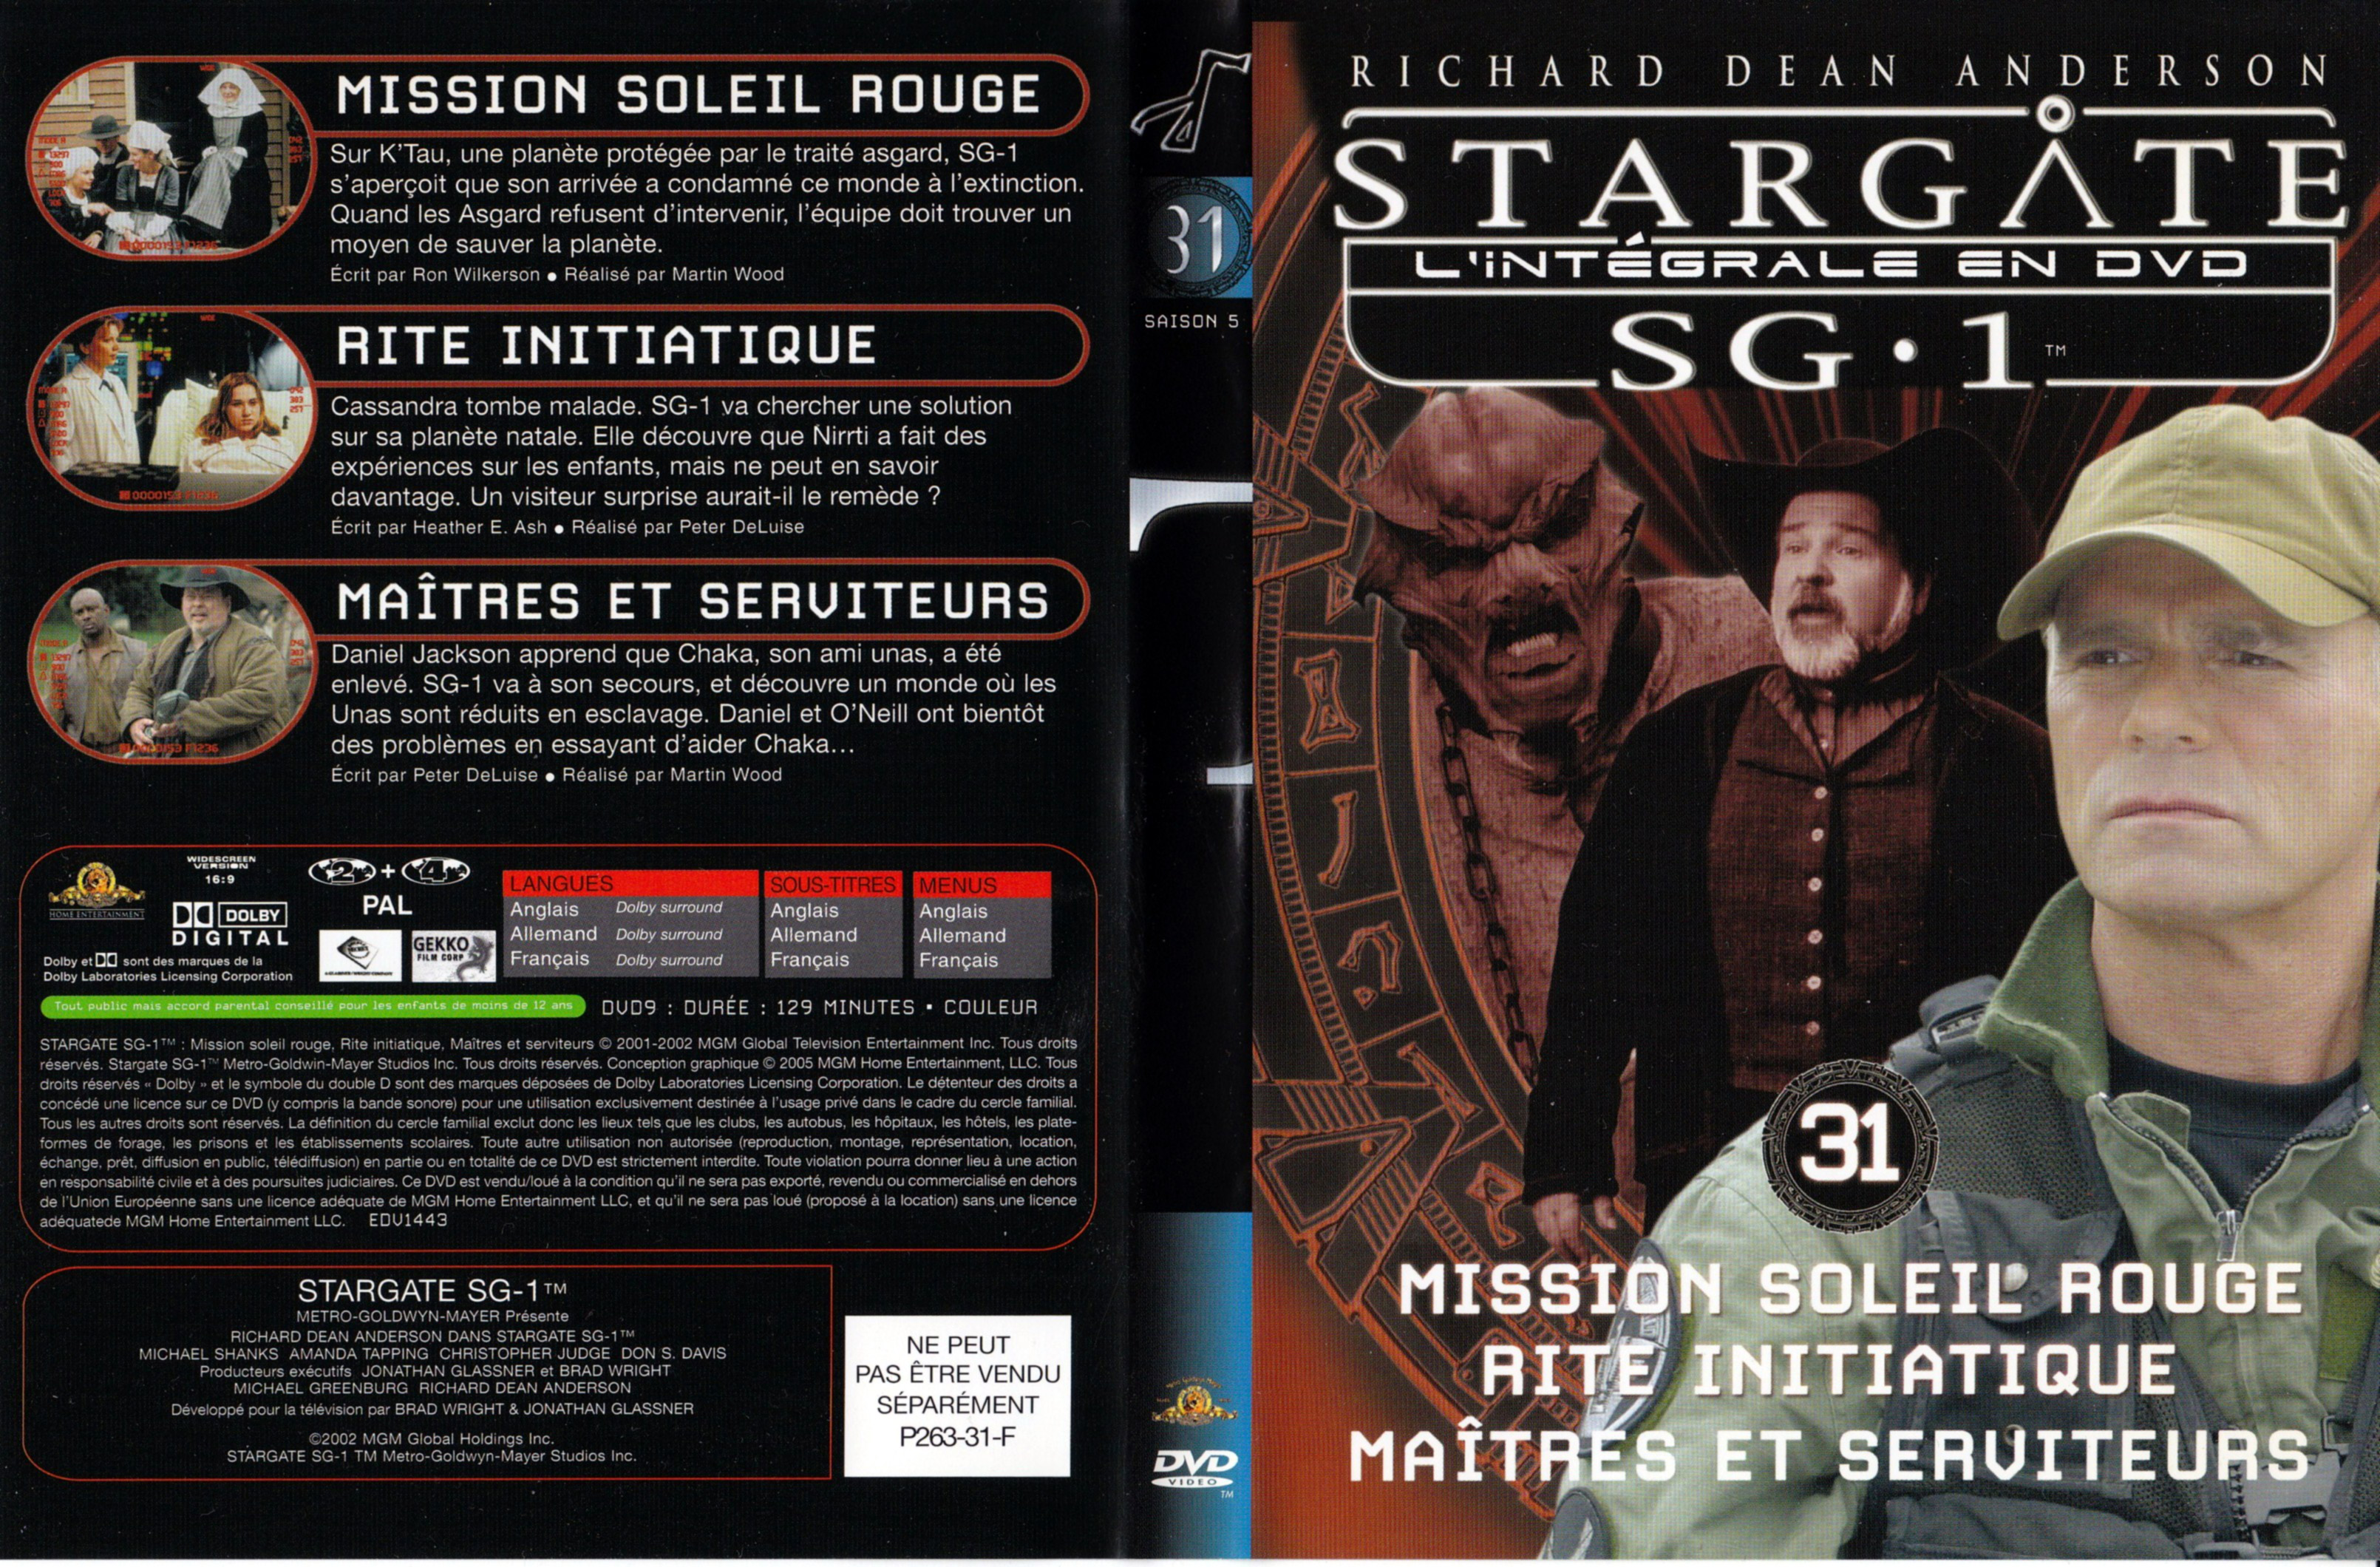 Jaquette DVD Stargate SG1 Intgrale Saison 5 vol 31